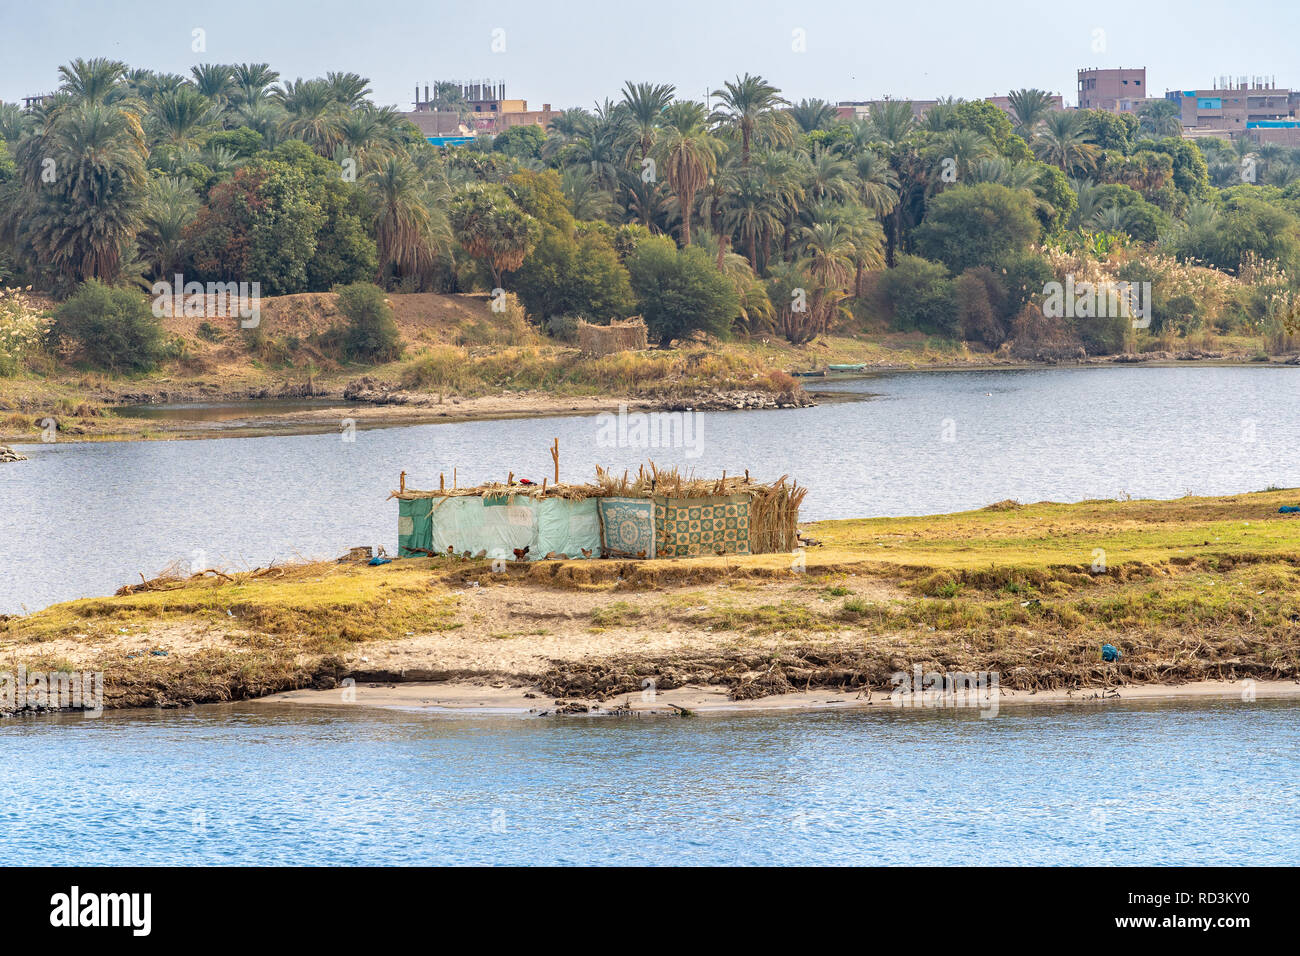 La vie sur le Nil. Règlement traditionnel égyptien sur les rives du Nil Banque D'Images